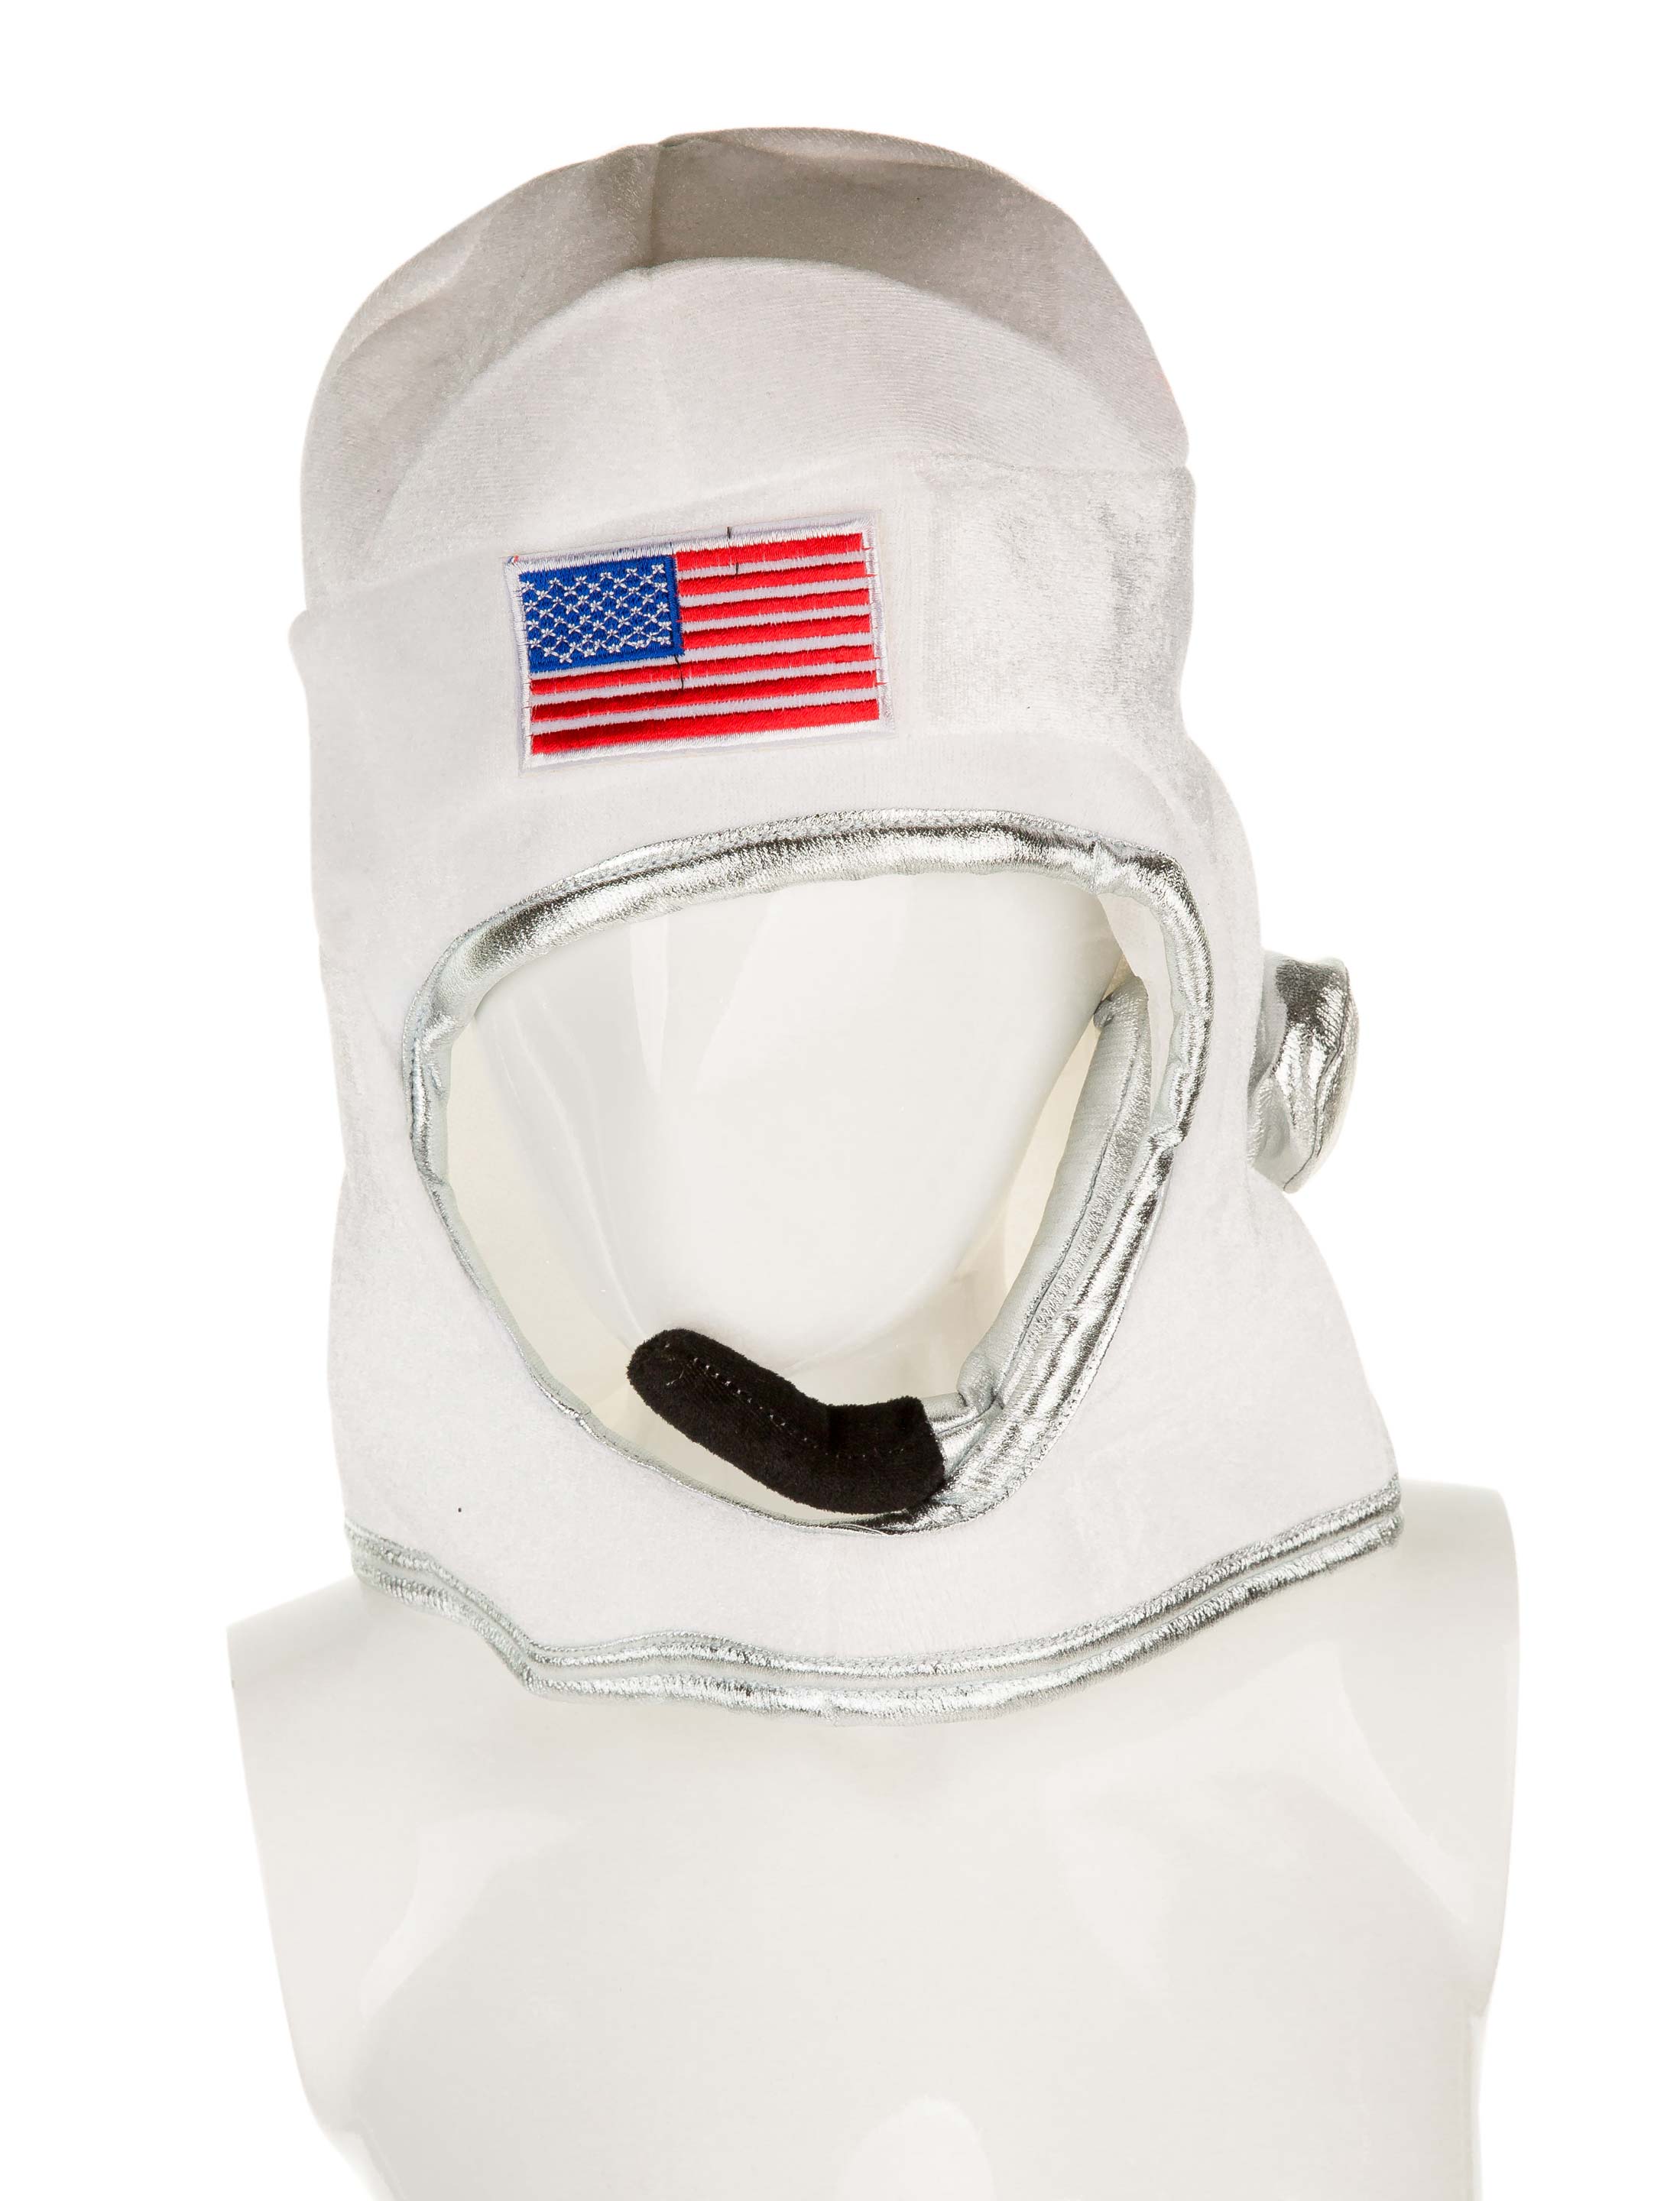 Astronautenhelm USA weiß